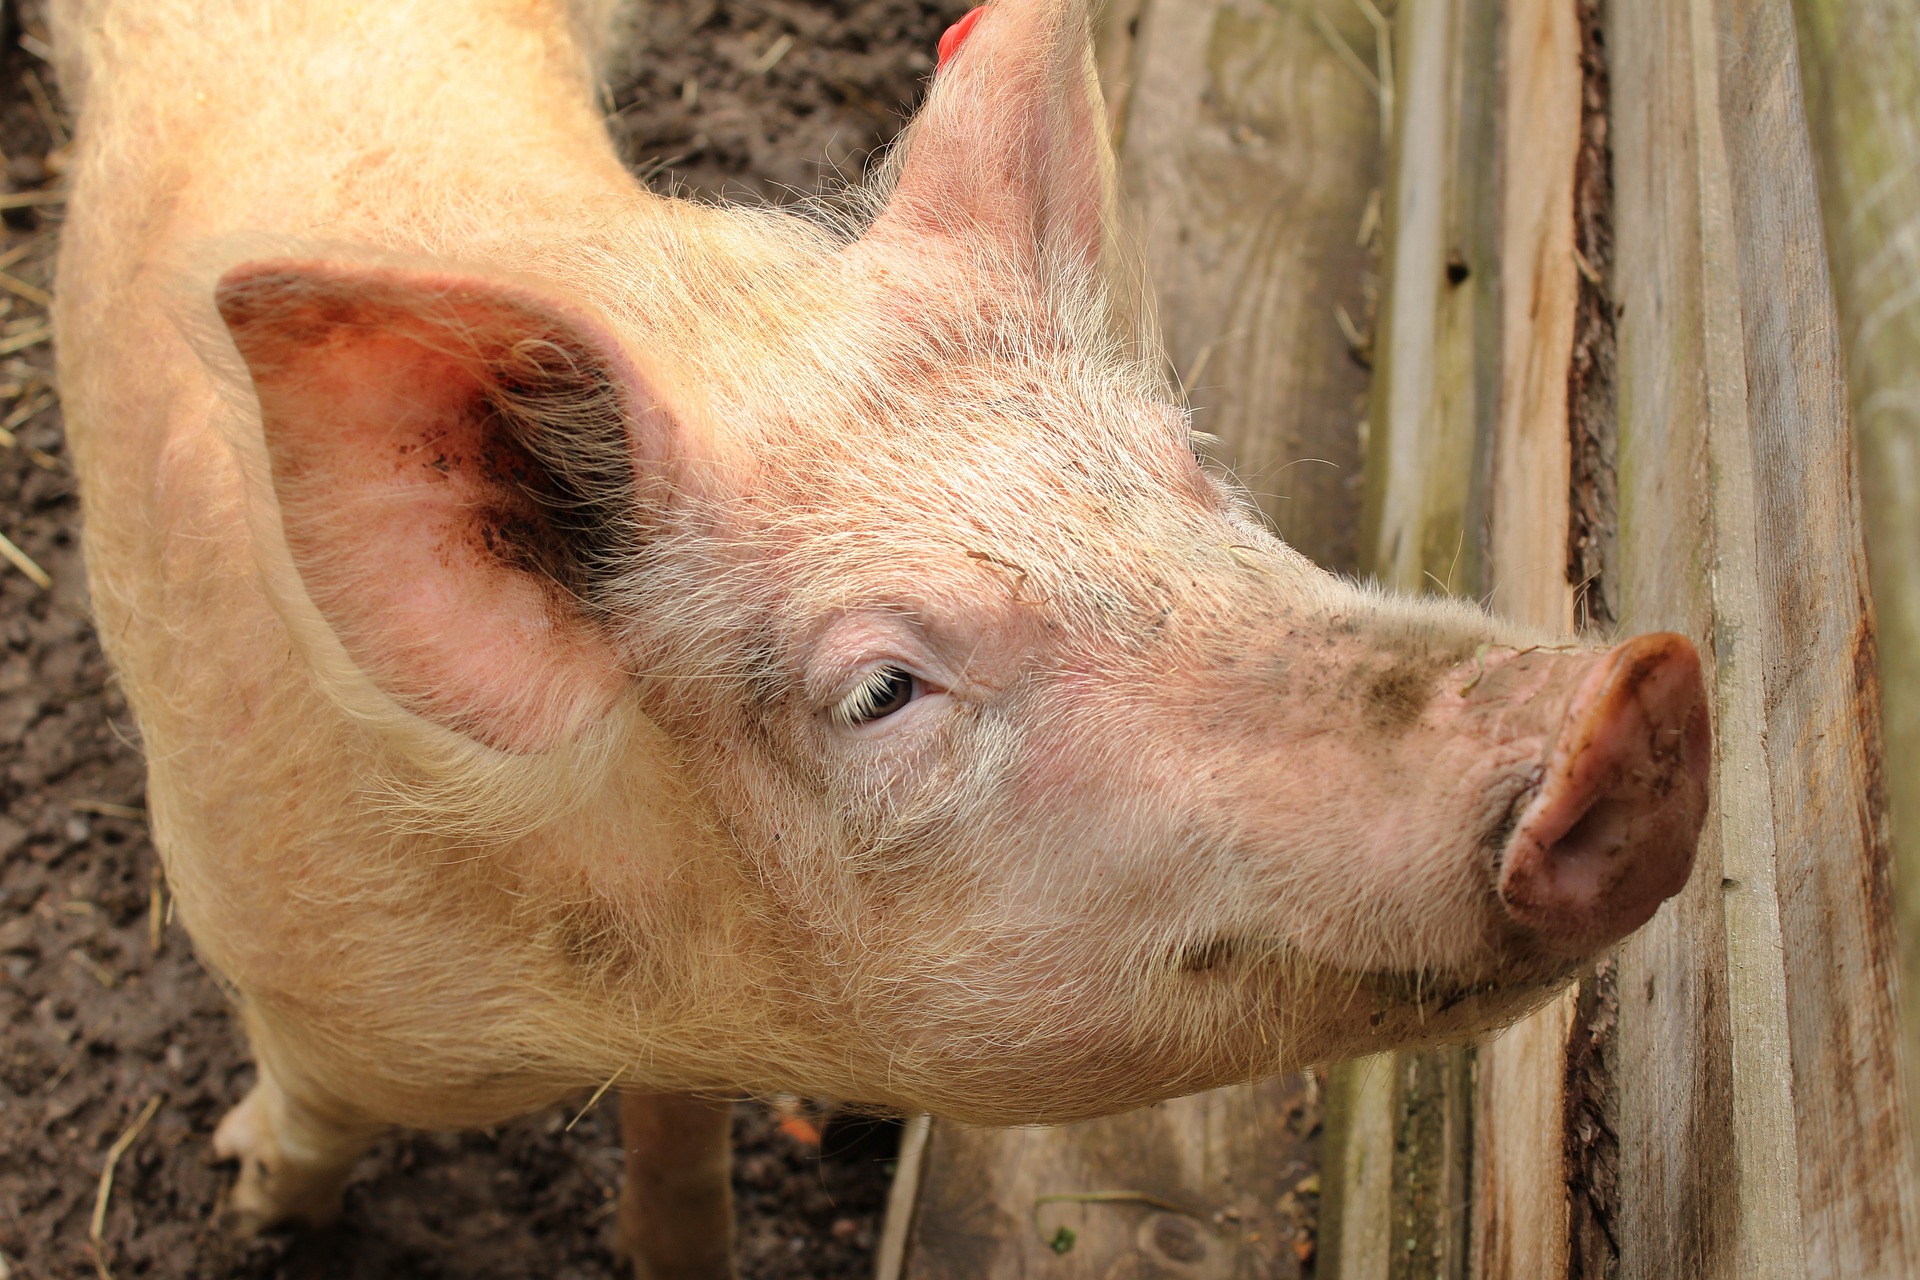 Hoffnung auf fette Gewinne mit magerem Schwein - Schweinpest in China ...